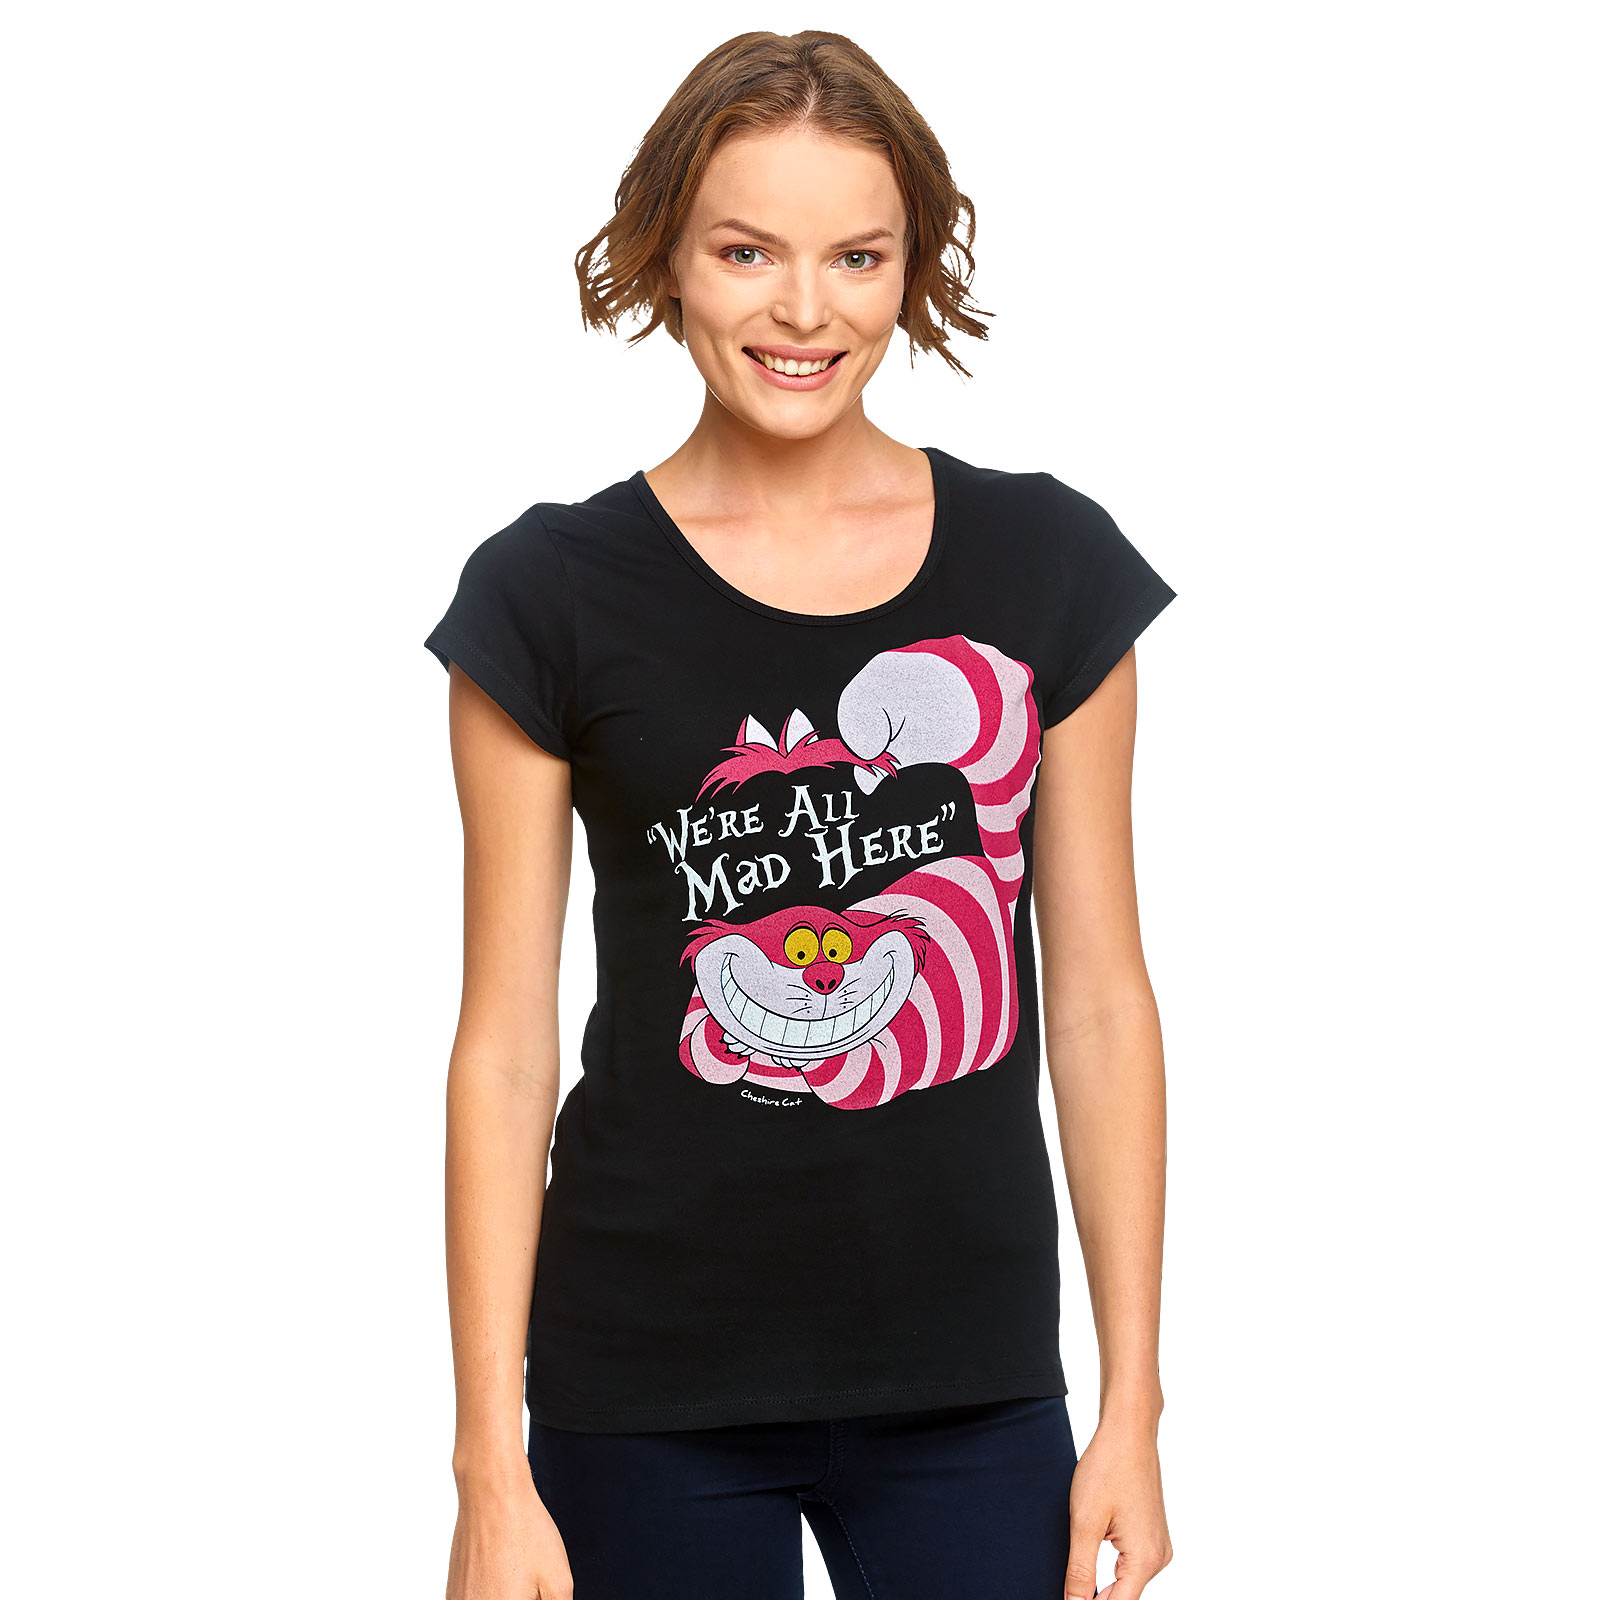 Alice in Wonderland - Cheshire Cat Women's T-Shirt Black